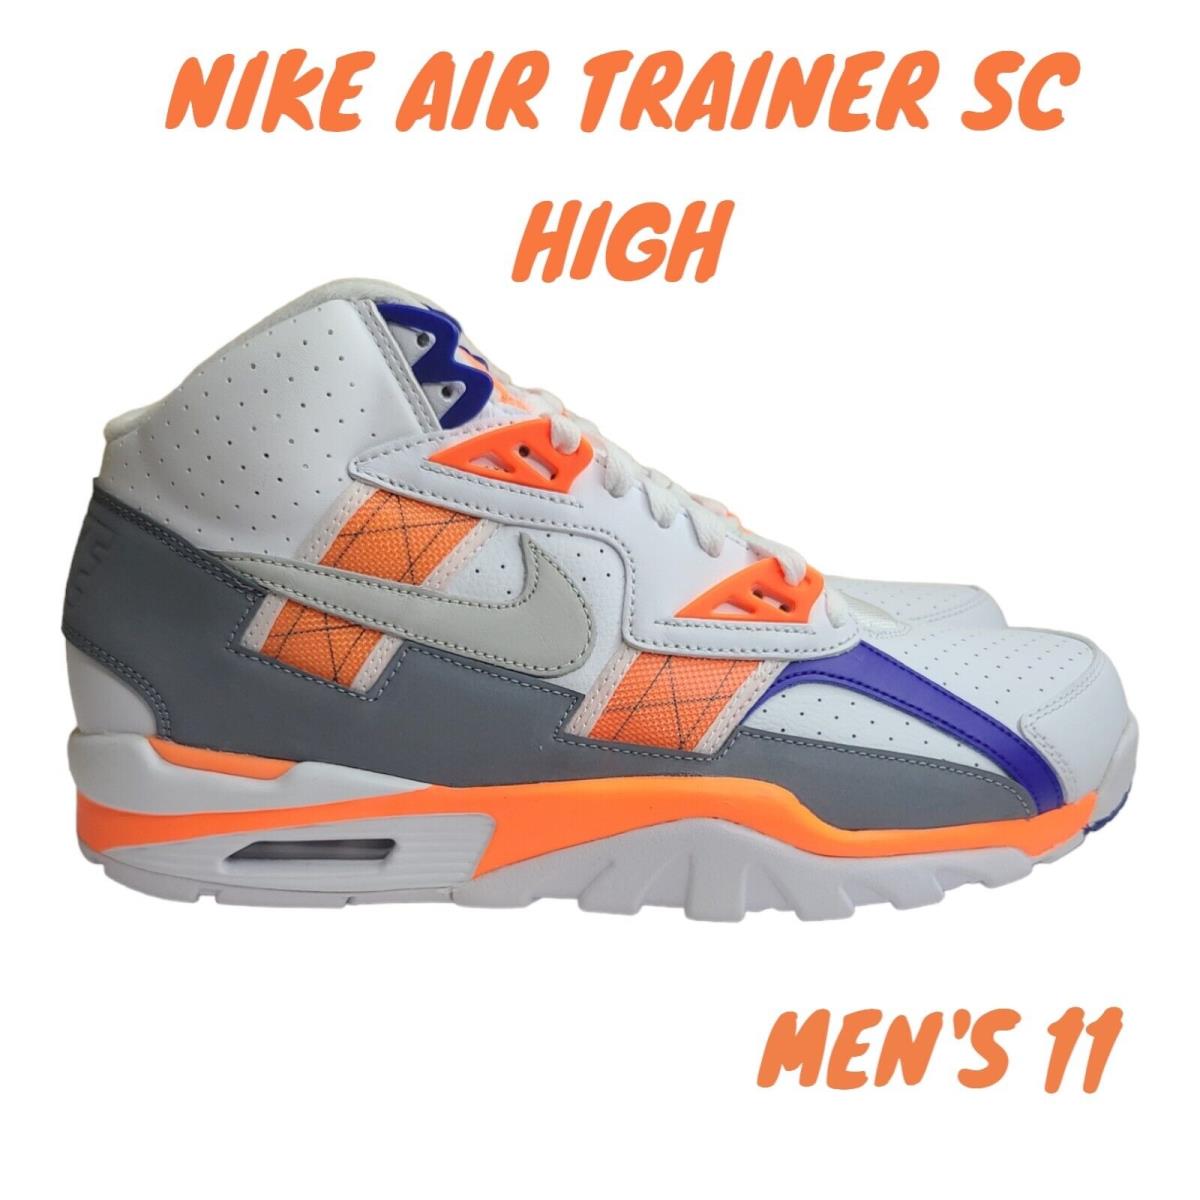 Nike Air Trainer SC High White Light Zen Grey Tart DV2212-100 Men`s Shoe Size 11